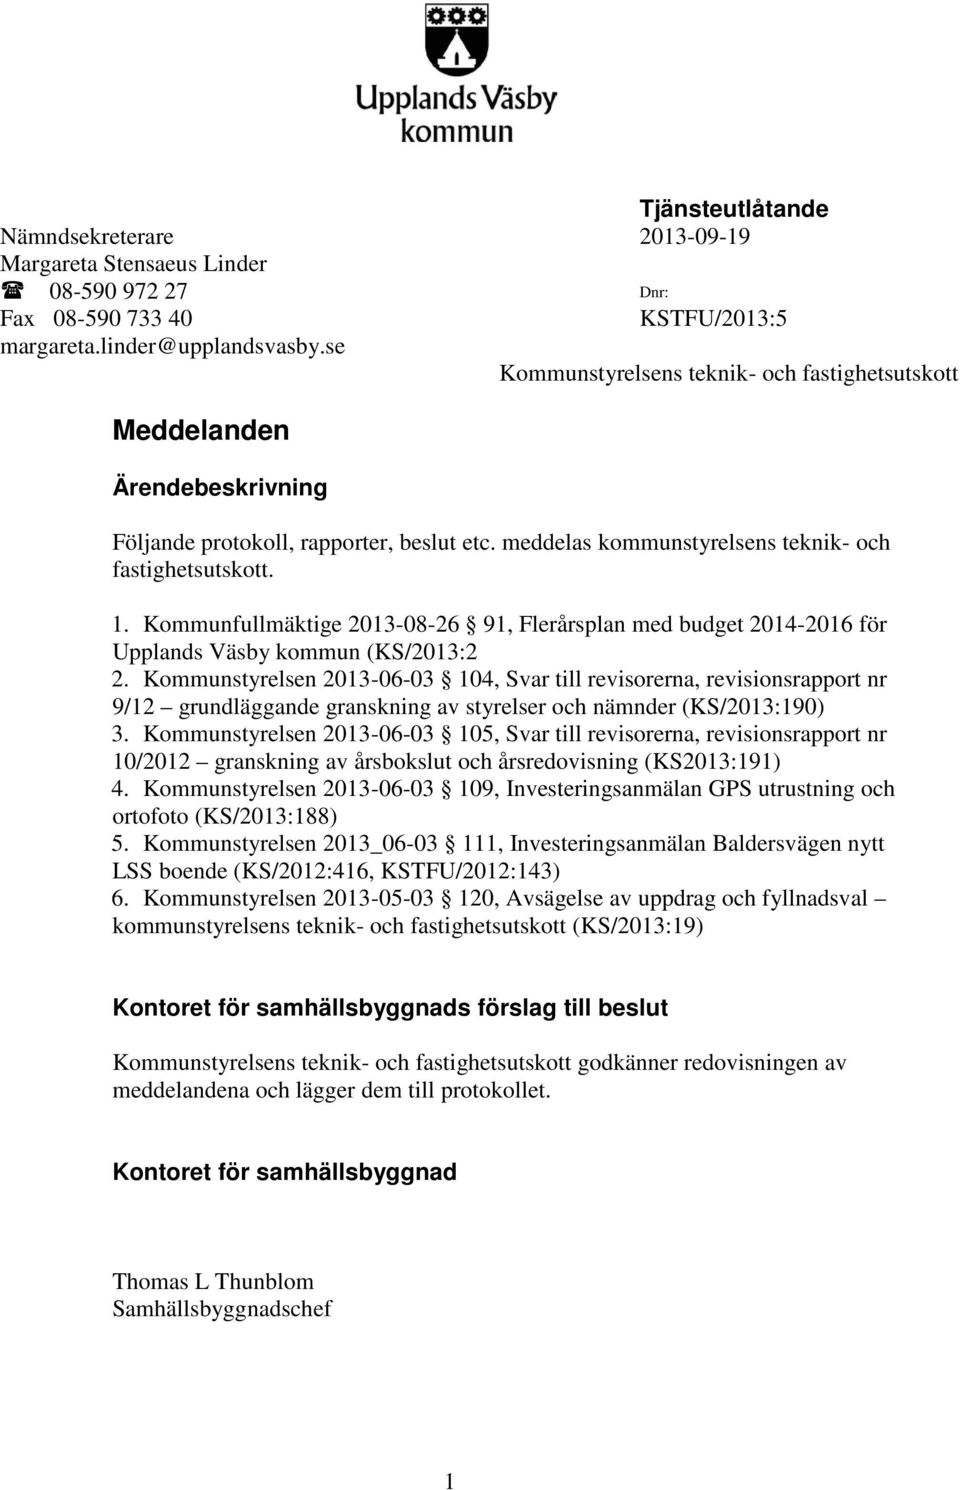 Kommunfullmäktige 2013-08-26 91, Flerårsplan med budget 2014-2016 för Upplands Väsby kommun (KS/2013:2 2.